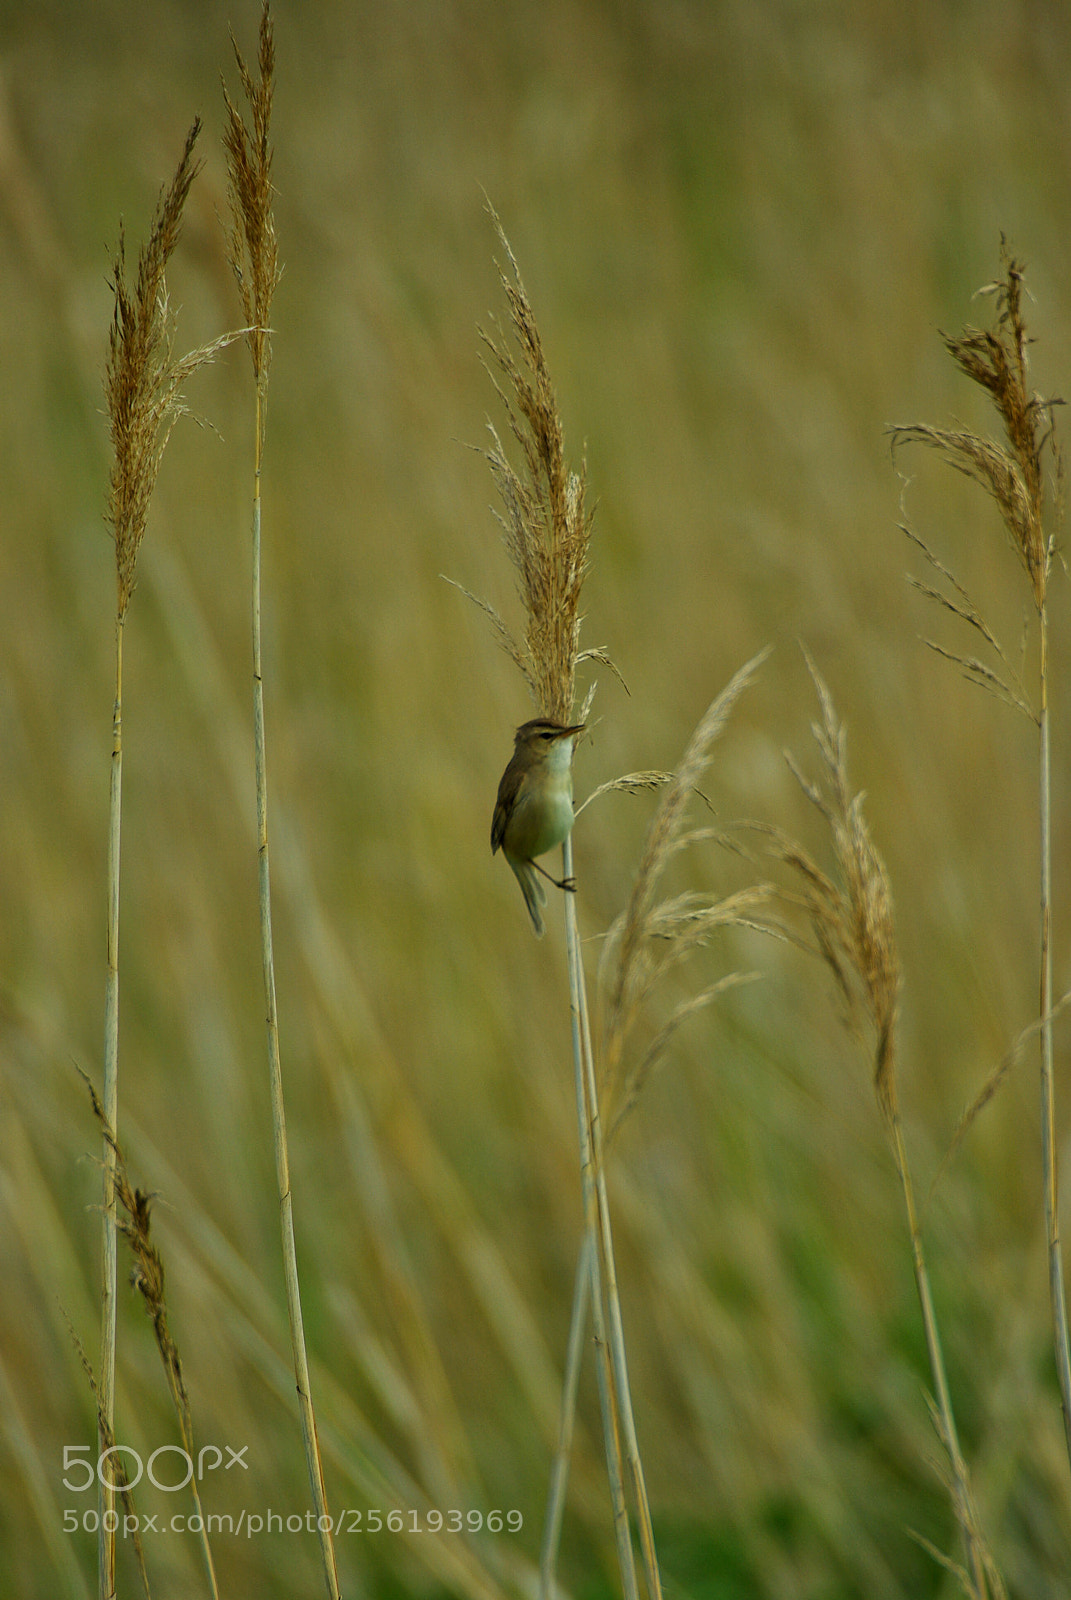 Pentax K10D sample photo. Koyoshikiri (black-browed reed warbler) photography